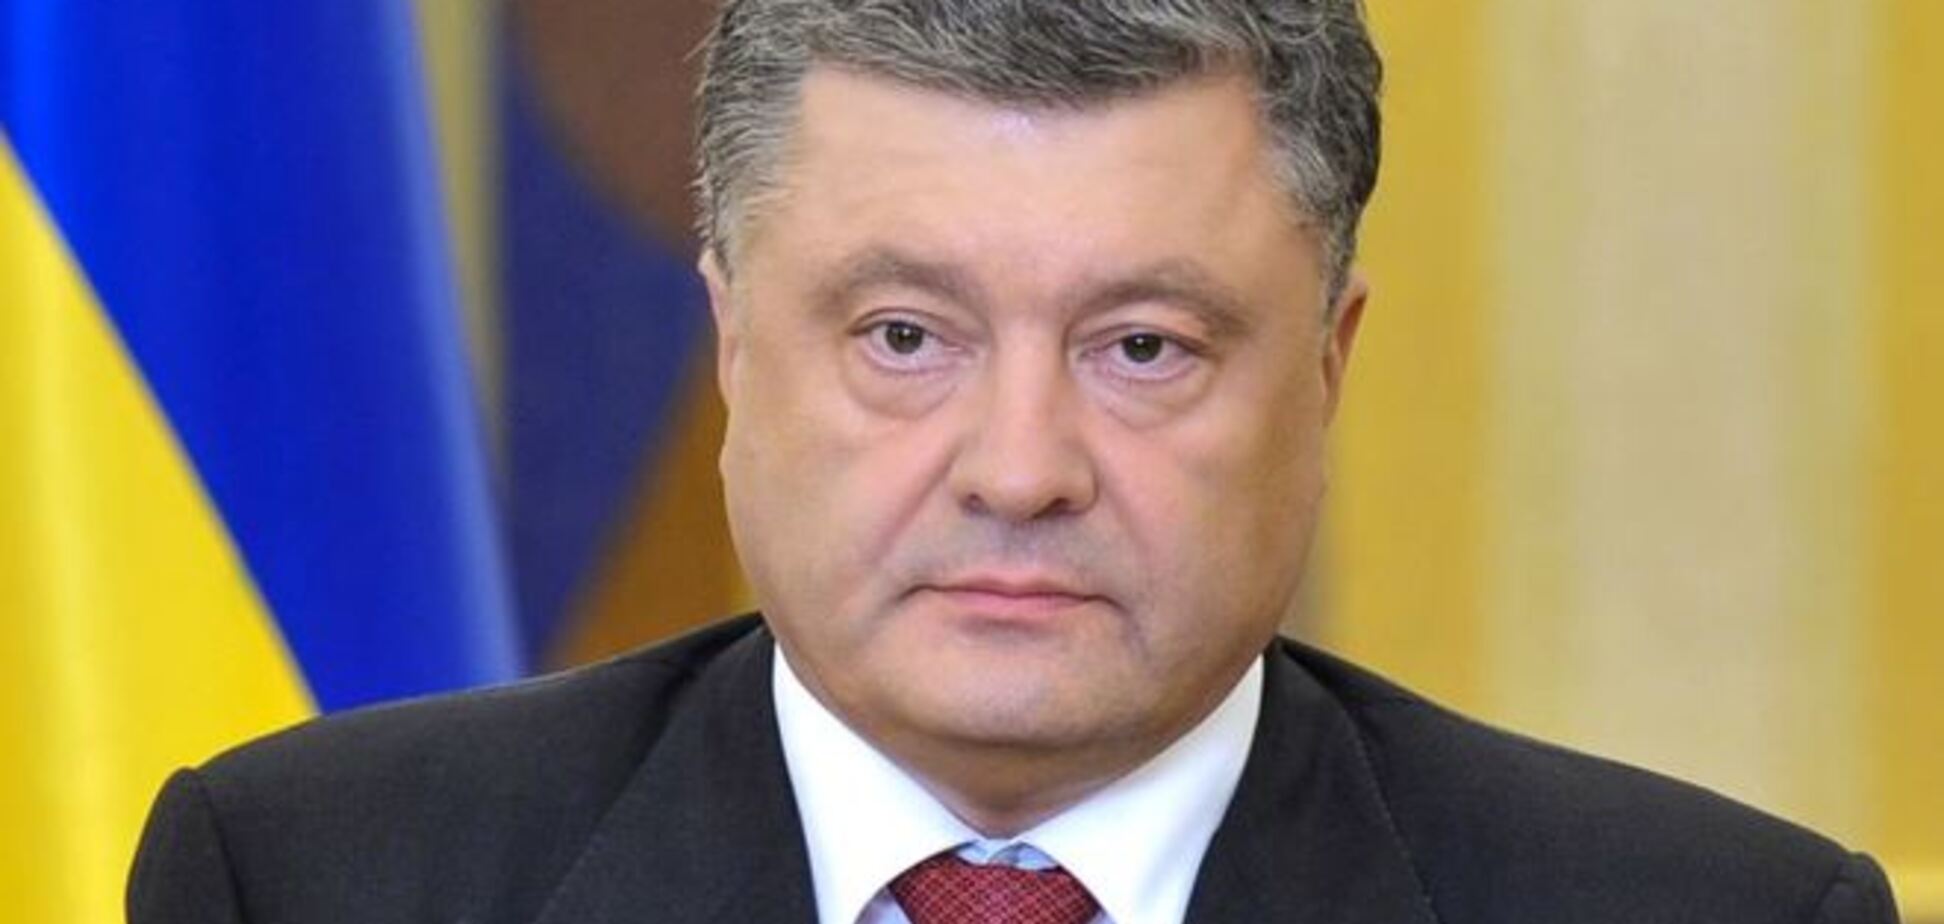 Порошенко поблагодарил украинцев за демократический выбор: текст обращения